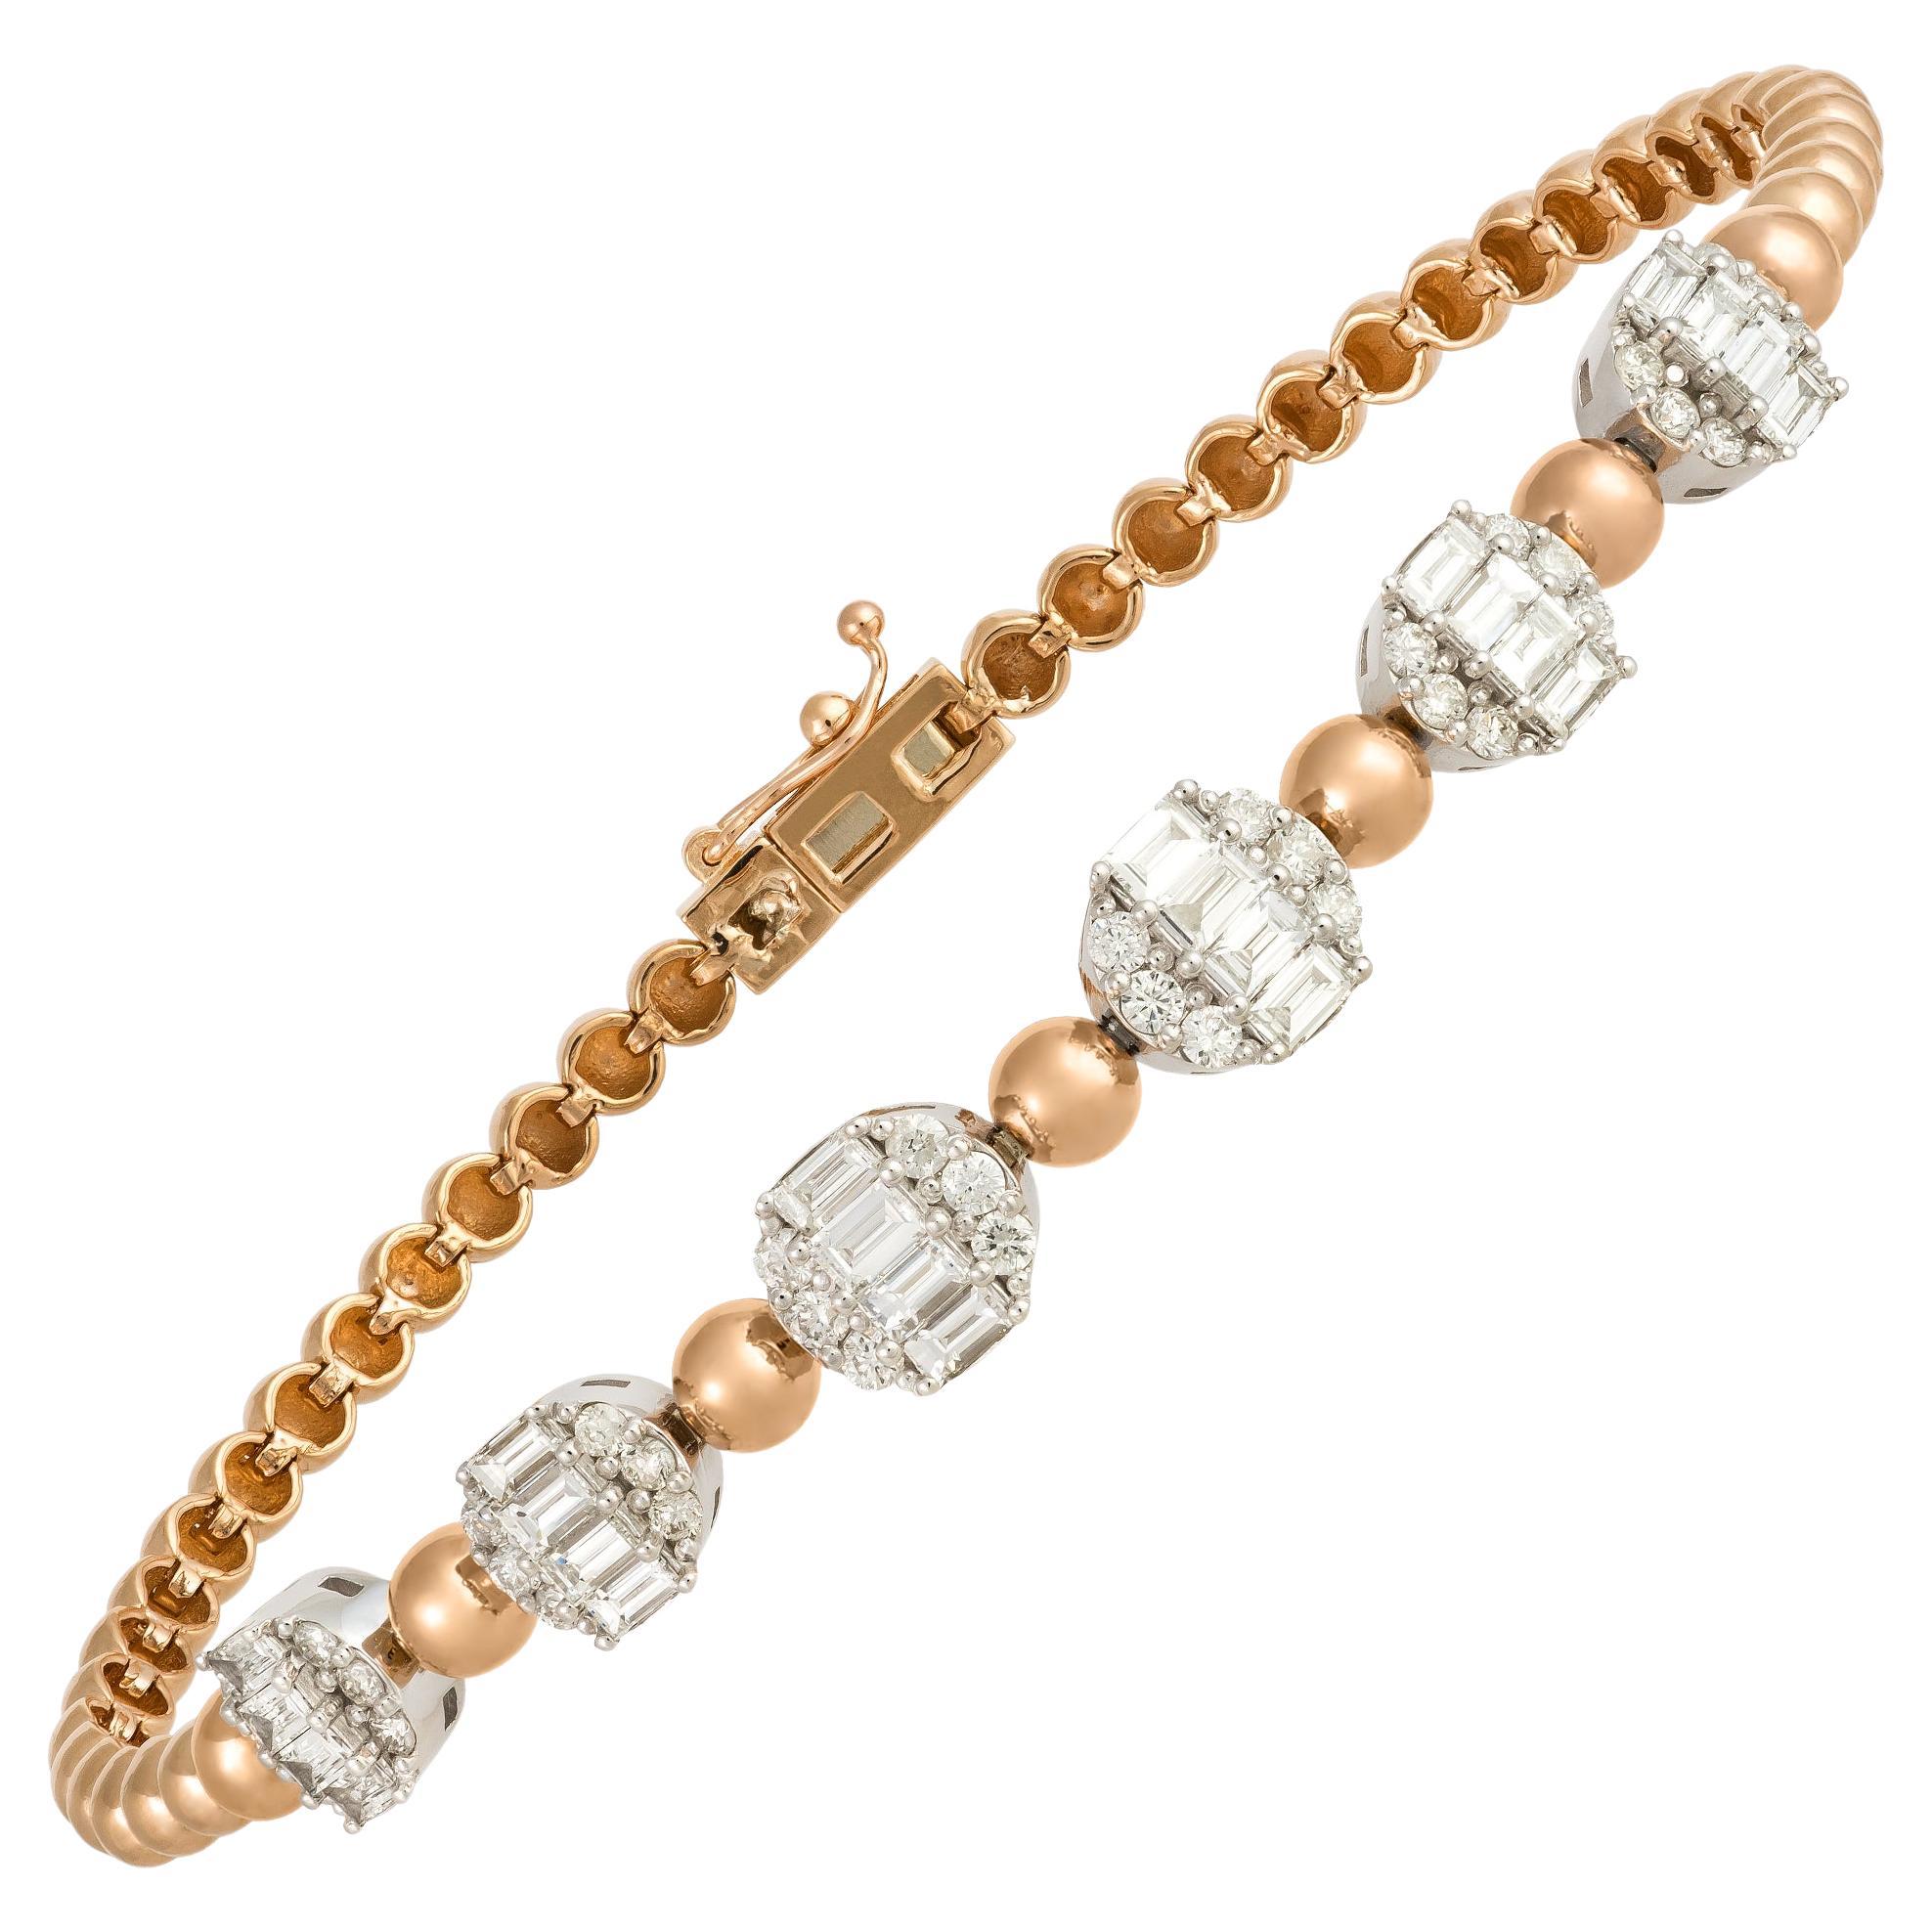 Modern White Pink Gold 18K Bracelet Diamond for Her